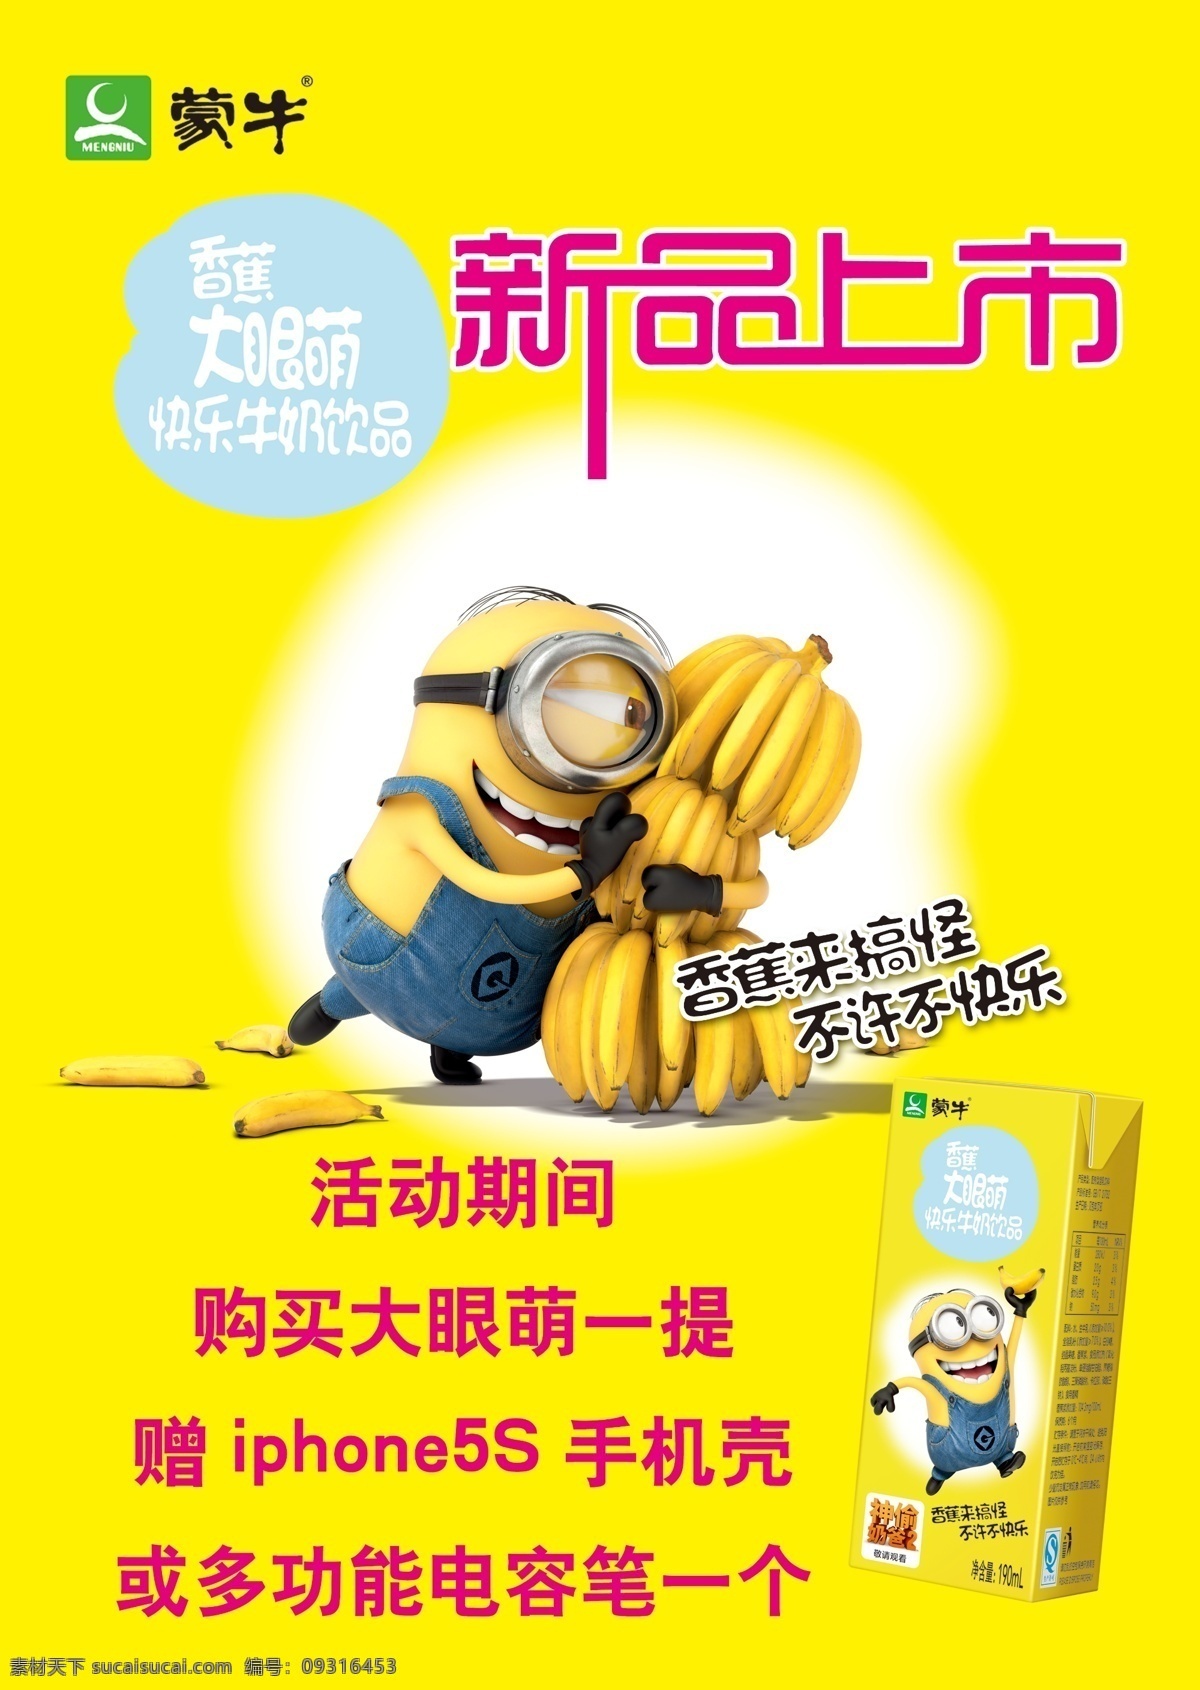 蒙牛 海报 香蕉 牛奶 小黄人 卡通 可爱 高清 黄色 背景 新品